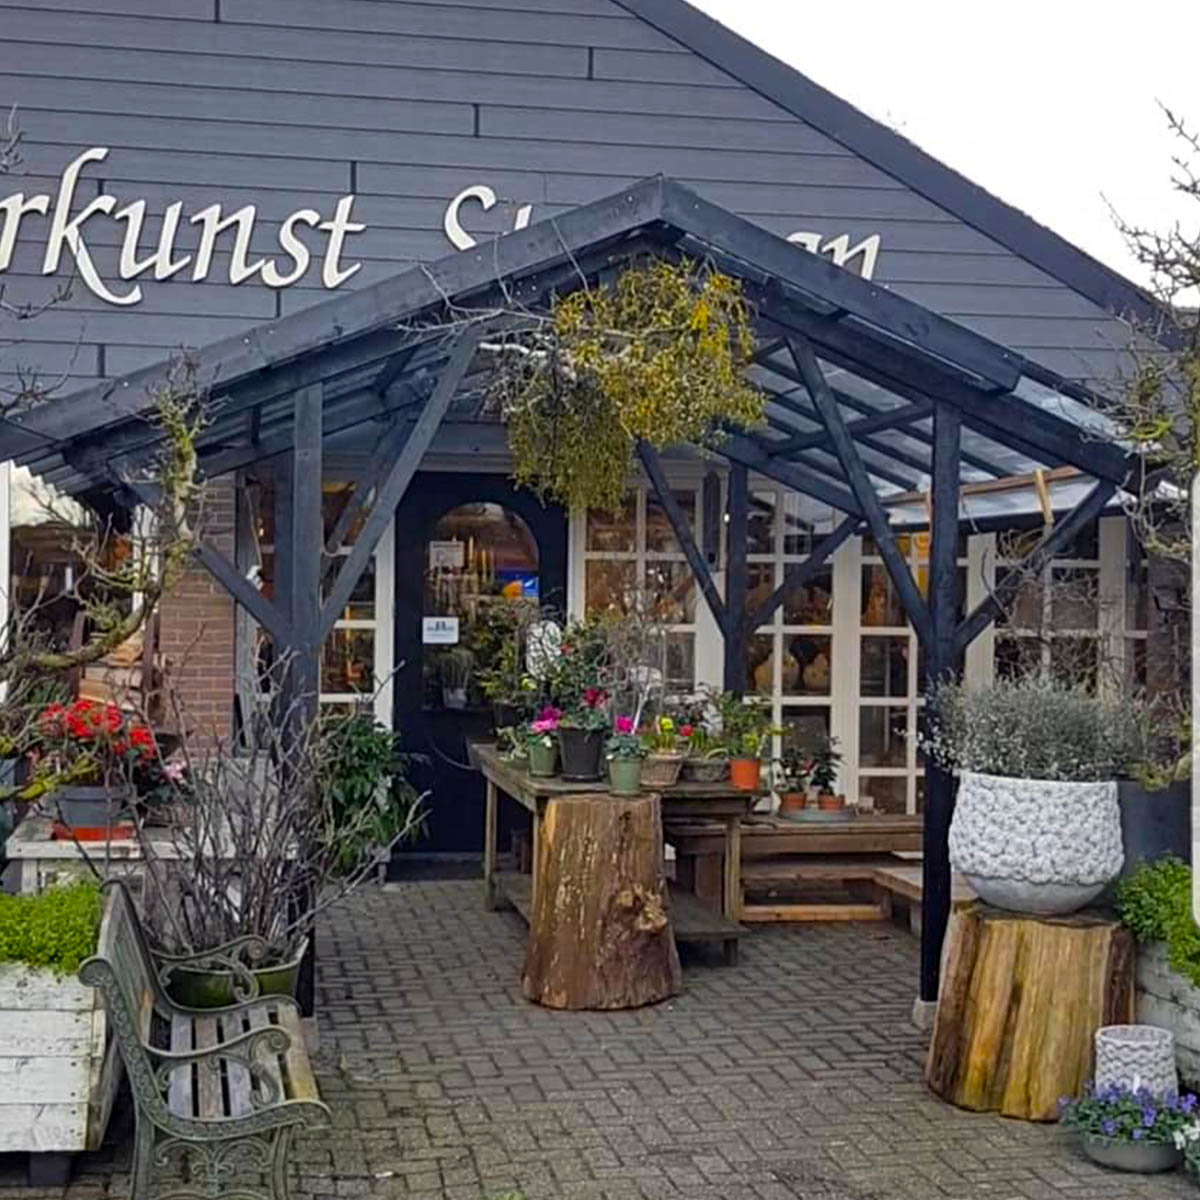 Bloemsierkunst Stokman Florist on Thursd feature